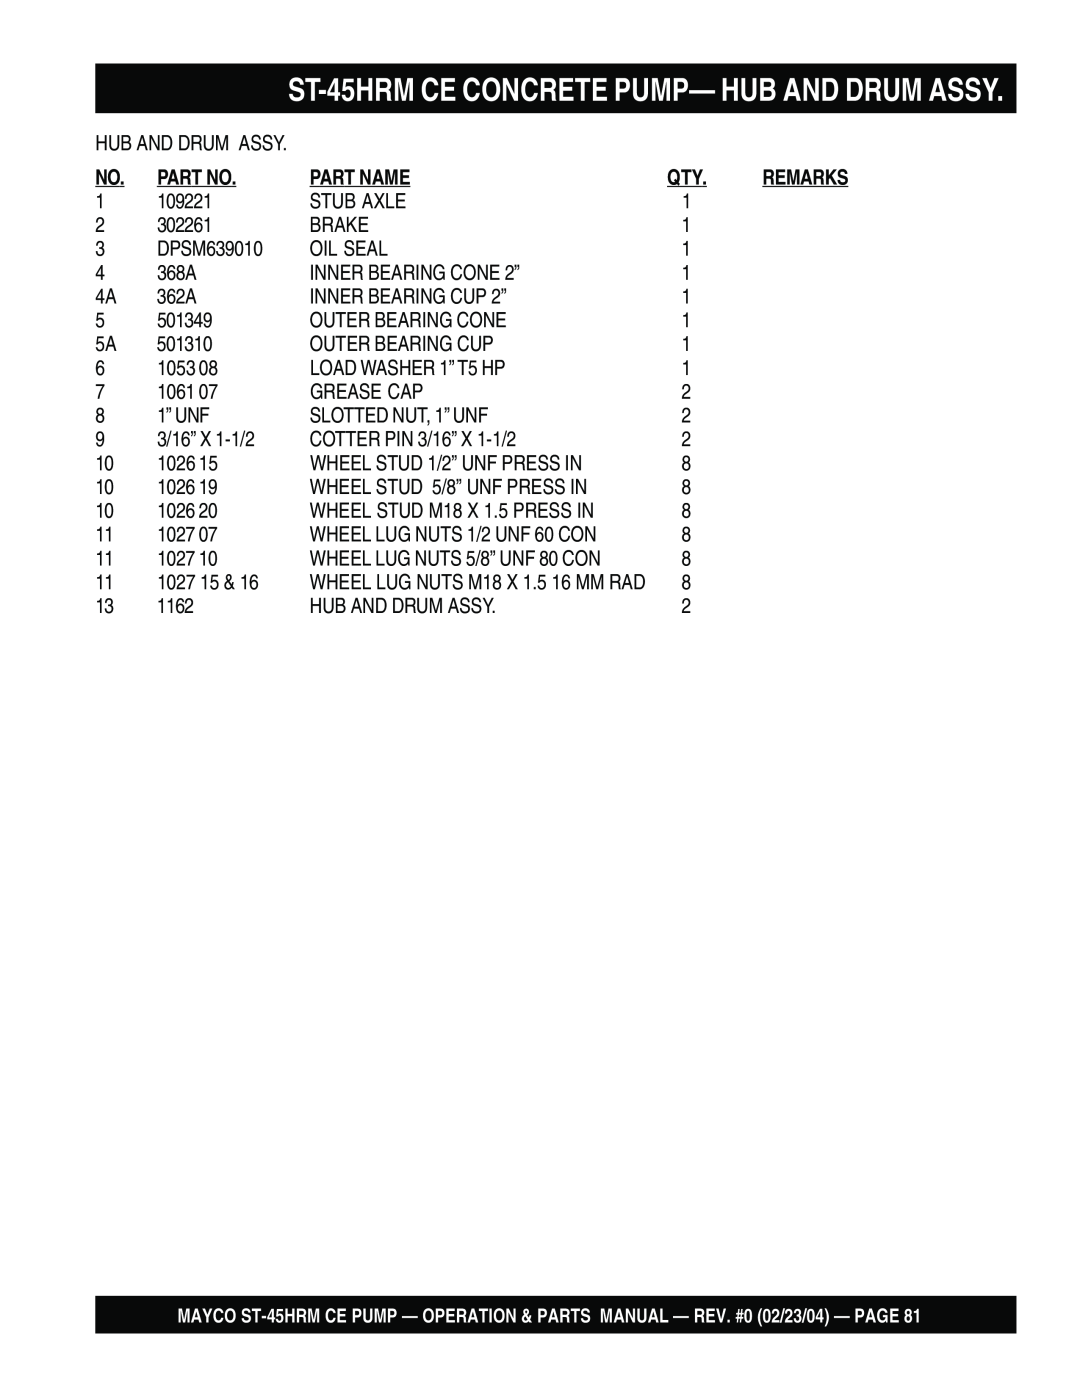 Multiquip ST-45HRM CE manual ST-45HRMCE CONCRETE PUMP— HUB AND DRUM ASSY, Part No, Part Name, 109221 